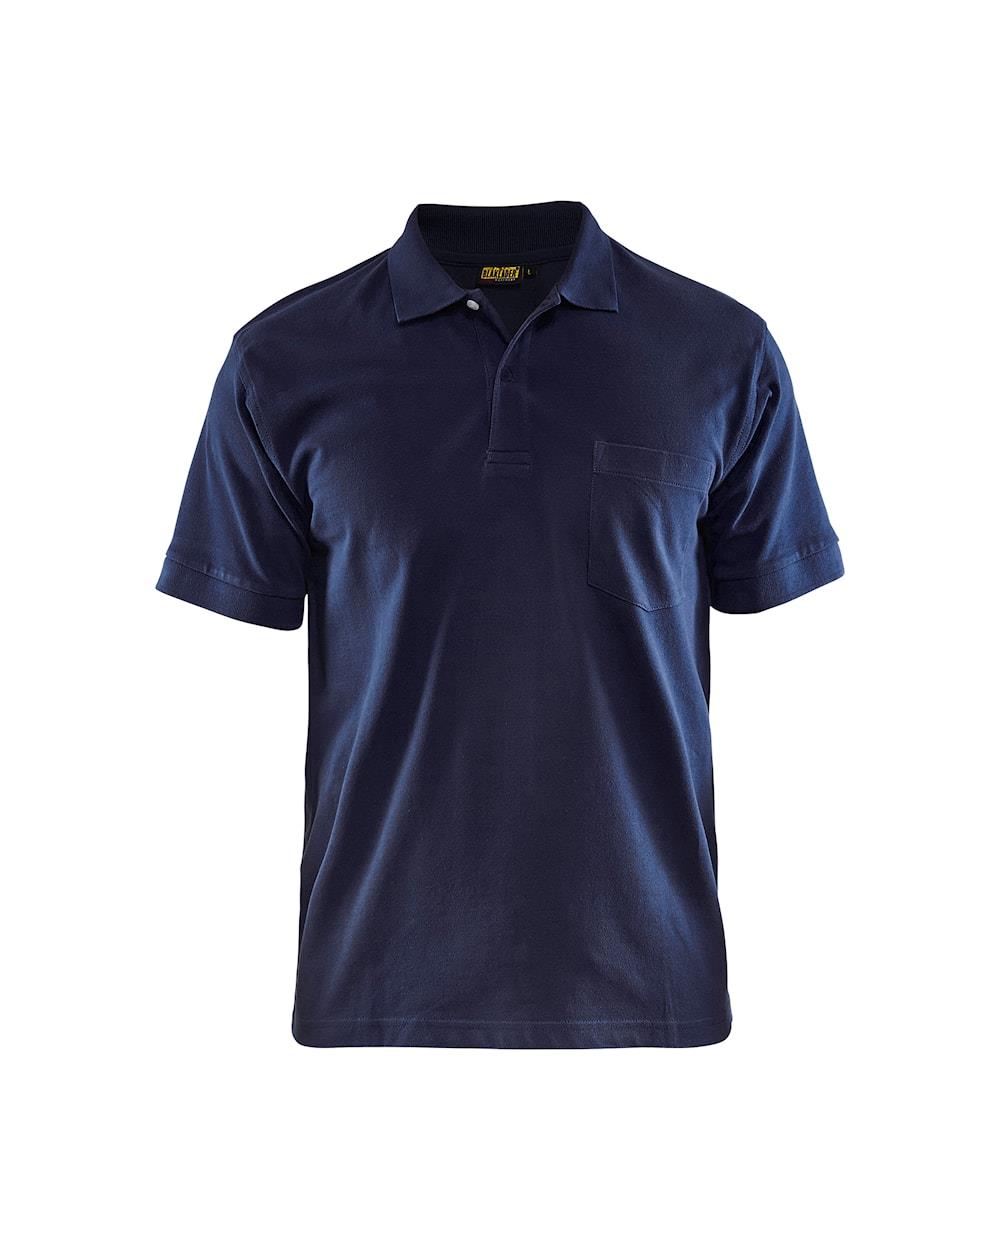 Blaklader navy men's cotton pique work polo-shirt #3305